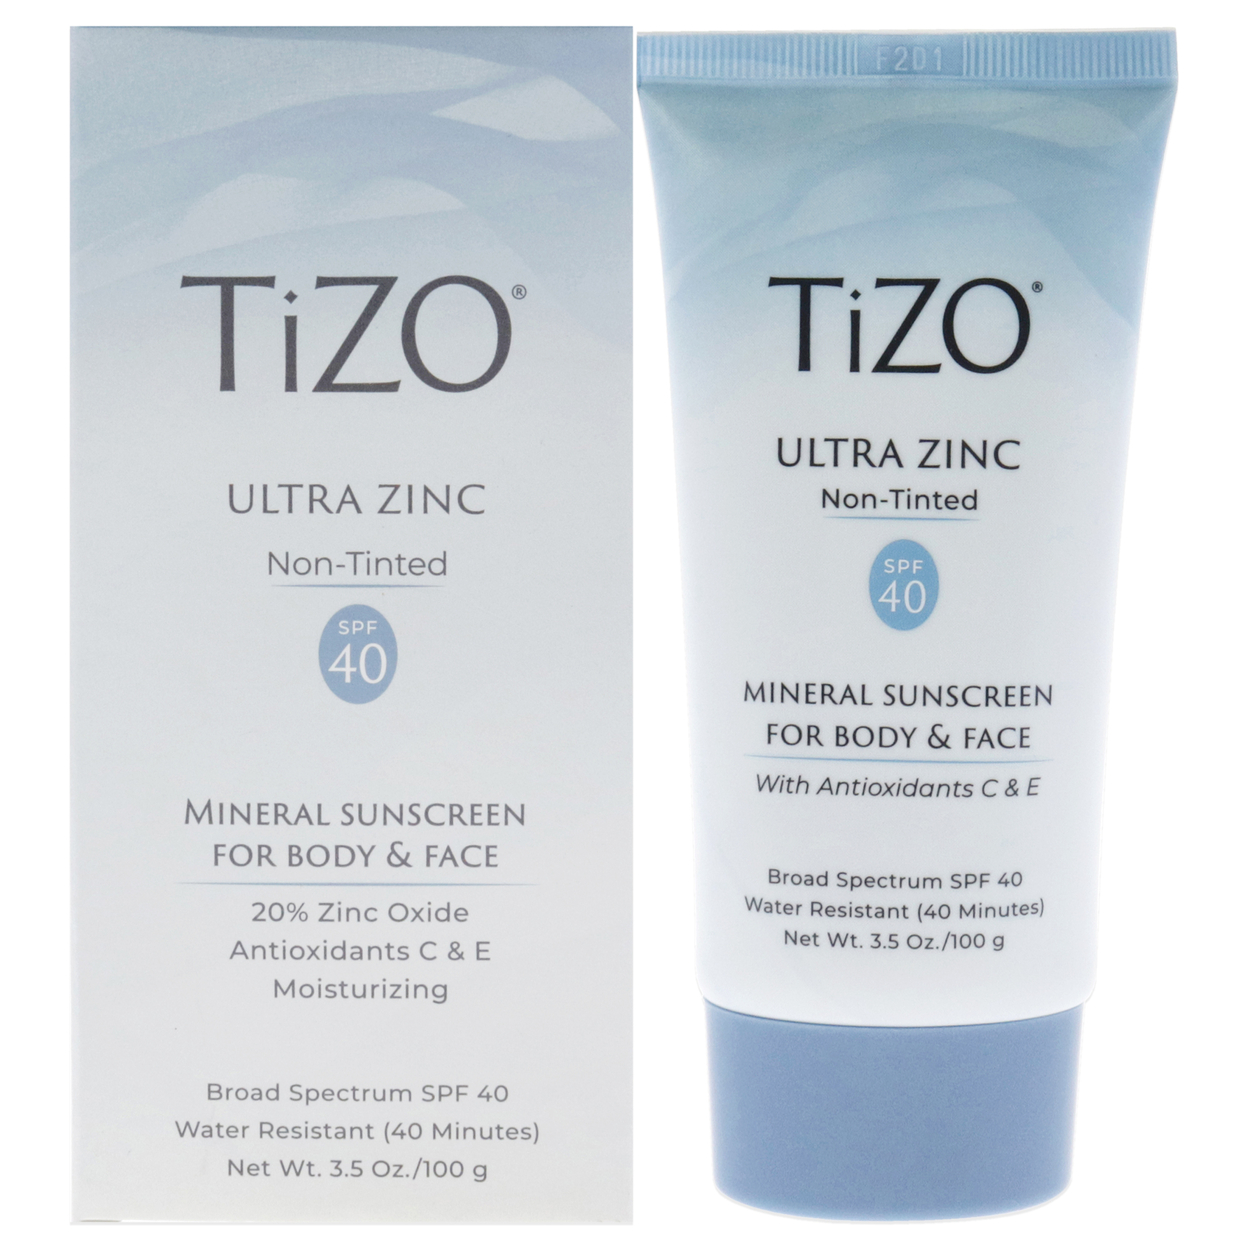 Tizo Ultra Zinc Body And Face Non-tinted SPF 40 Sunscreen 3.5 Oz